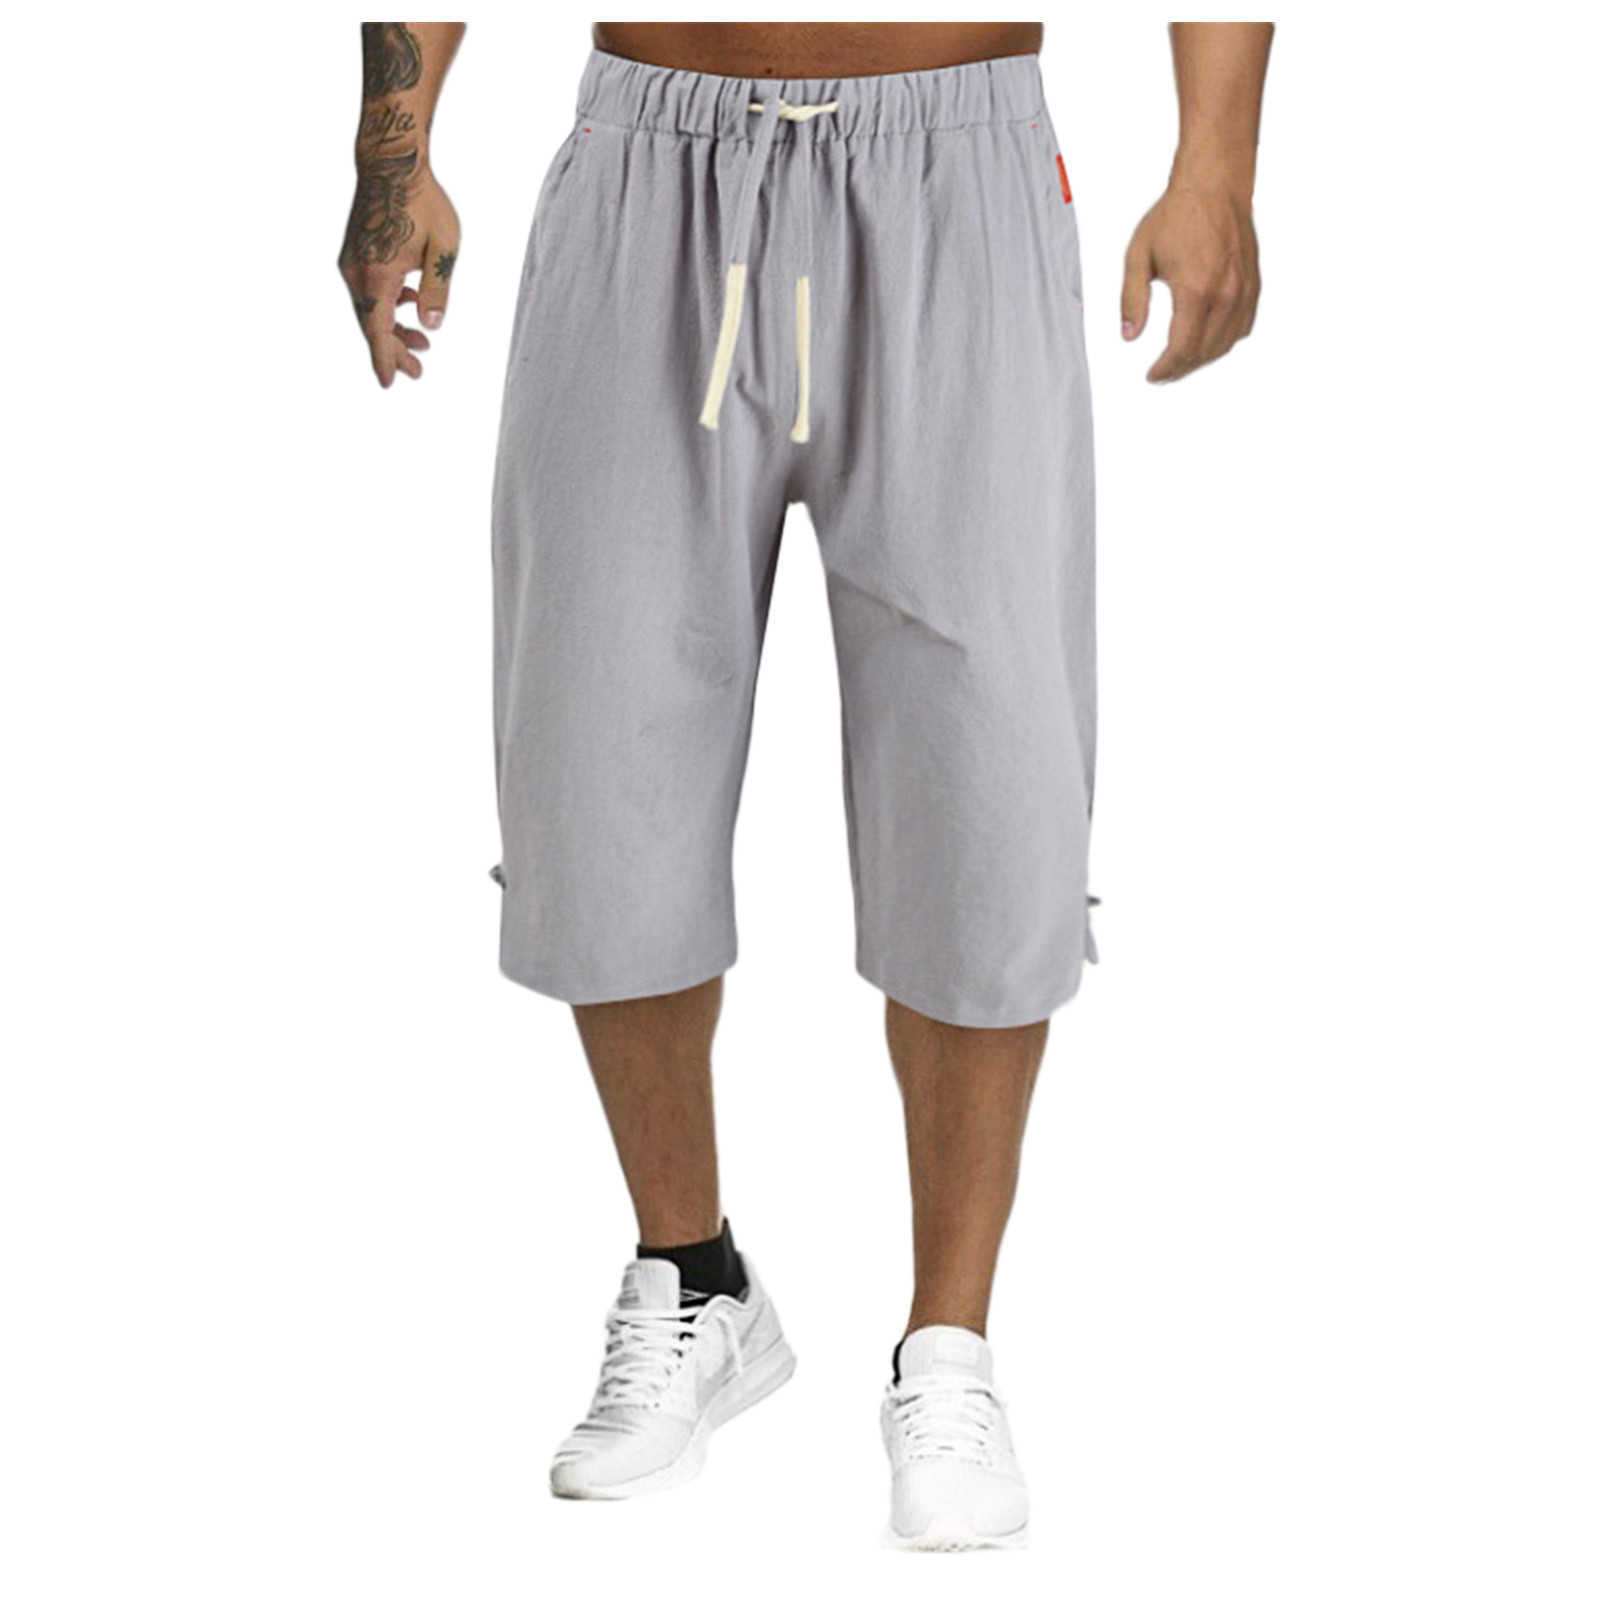 Shorts pour hommes Shorts pour hommes Culottes d'été 2021 Pantalons en coton et lin minces Homme Bermuda Board Beach Black Shorts longs pour hommes W0327